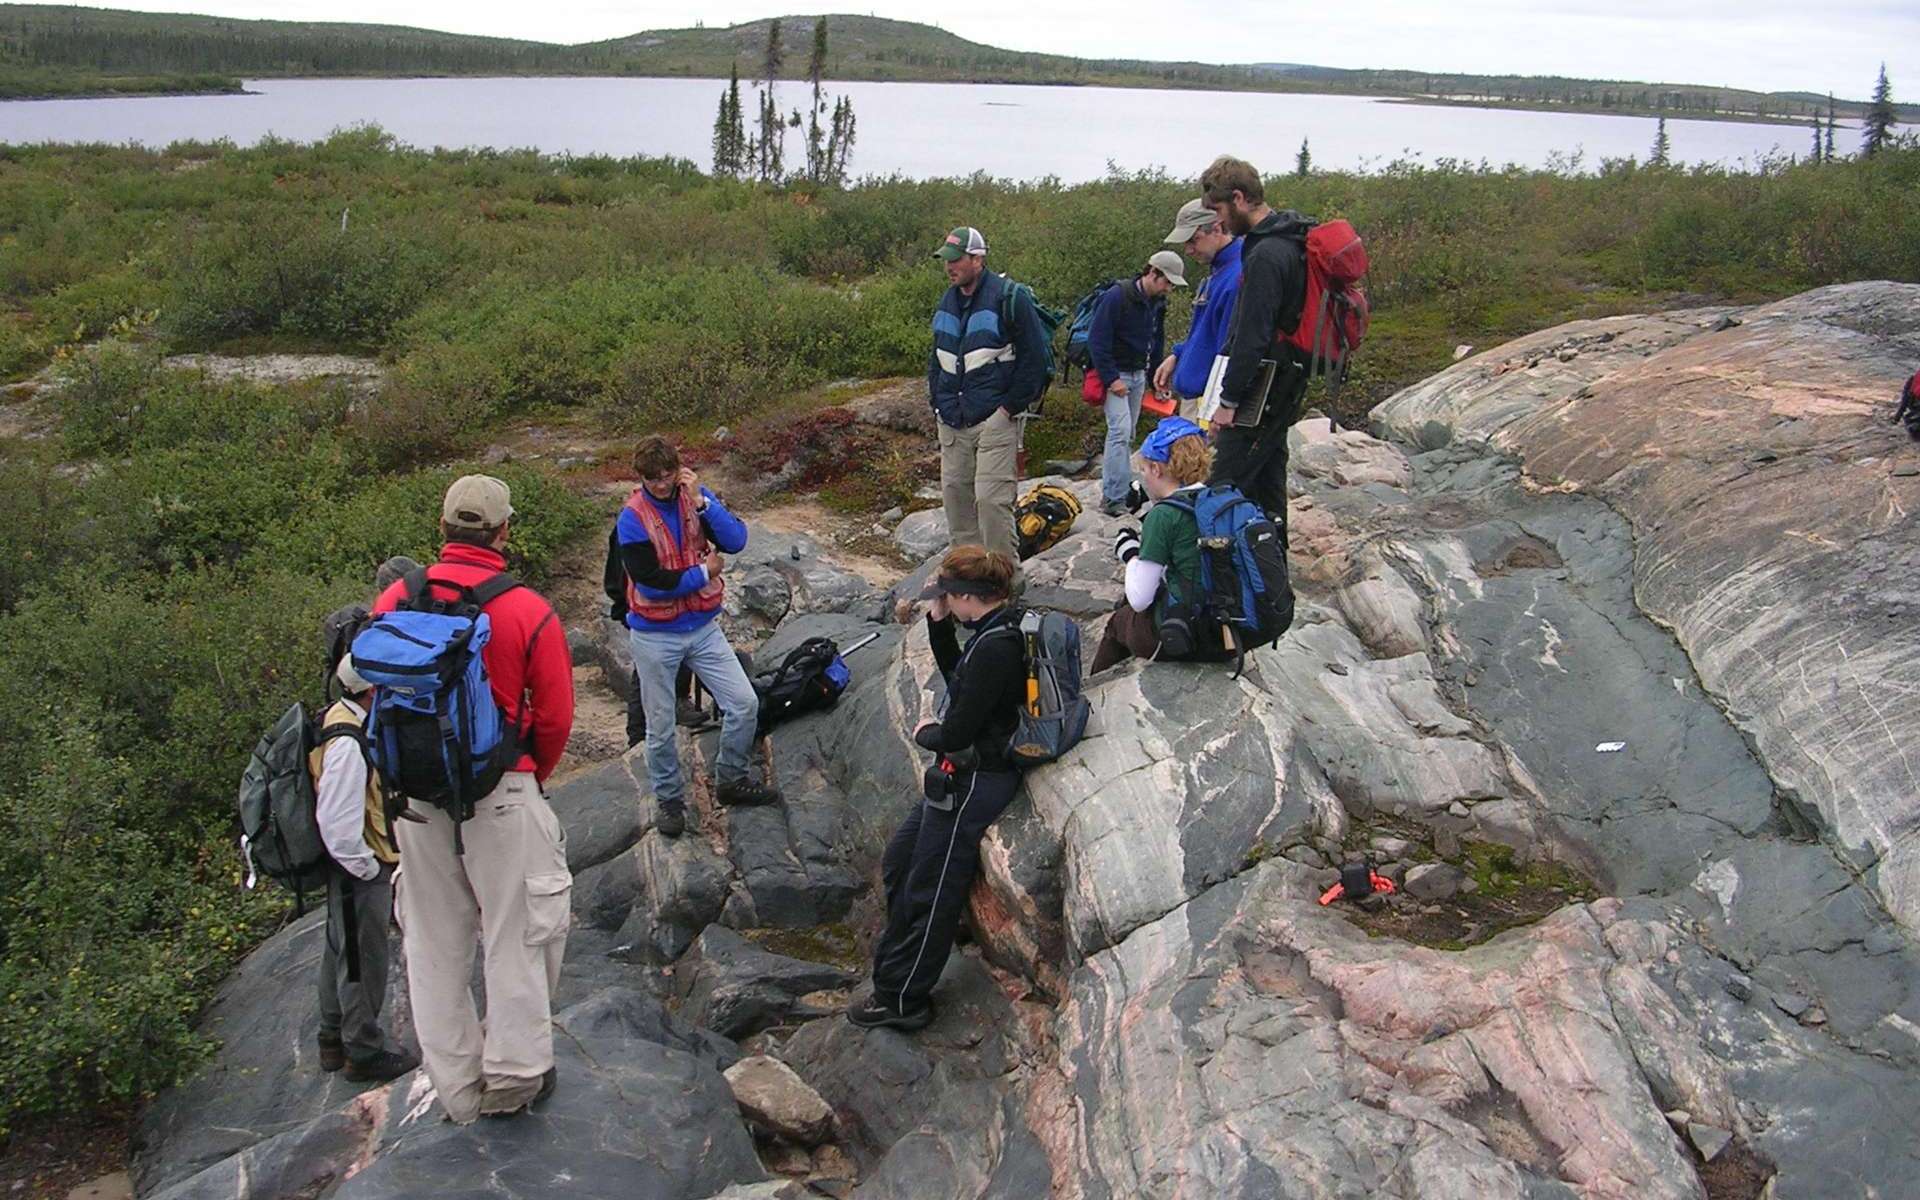 Une équipe d'étudiants en géologie examine l'affleurement rocheux de gneiss d'Acasta situé sur une île au Canada. Découvert en 1989, il tire son nom de sa proximité avec la rivière Acasta du Grand Lac de l'Ours. Ses roches ont des âges compris entre 4 à 3,58 milliards d'années et elles sont des vestiges de croûte continentale les plus anciens connus à ce jour. © Northwest Territories Geoscience Office